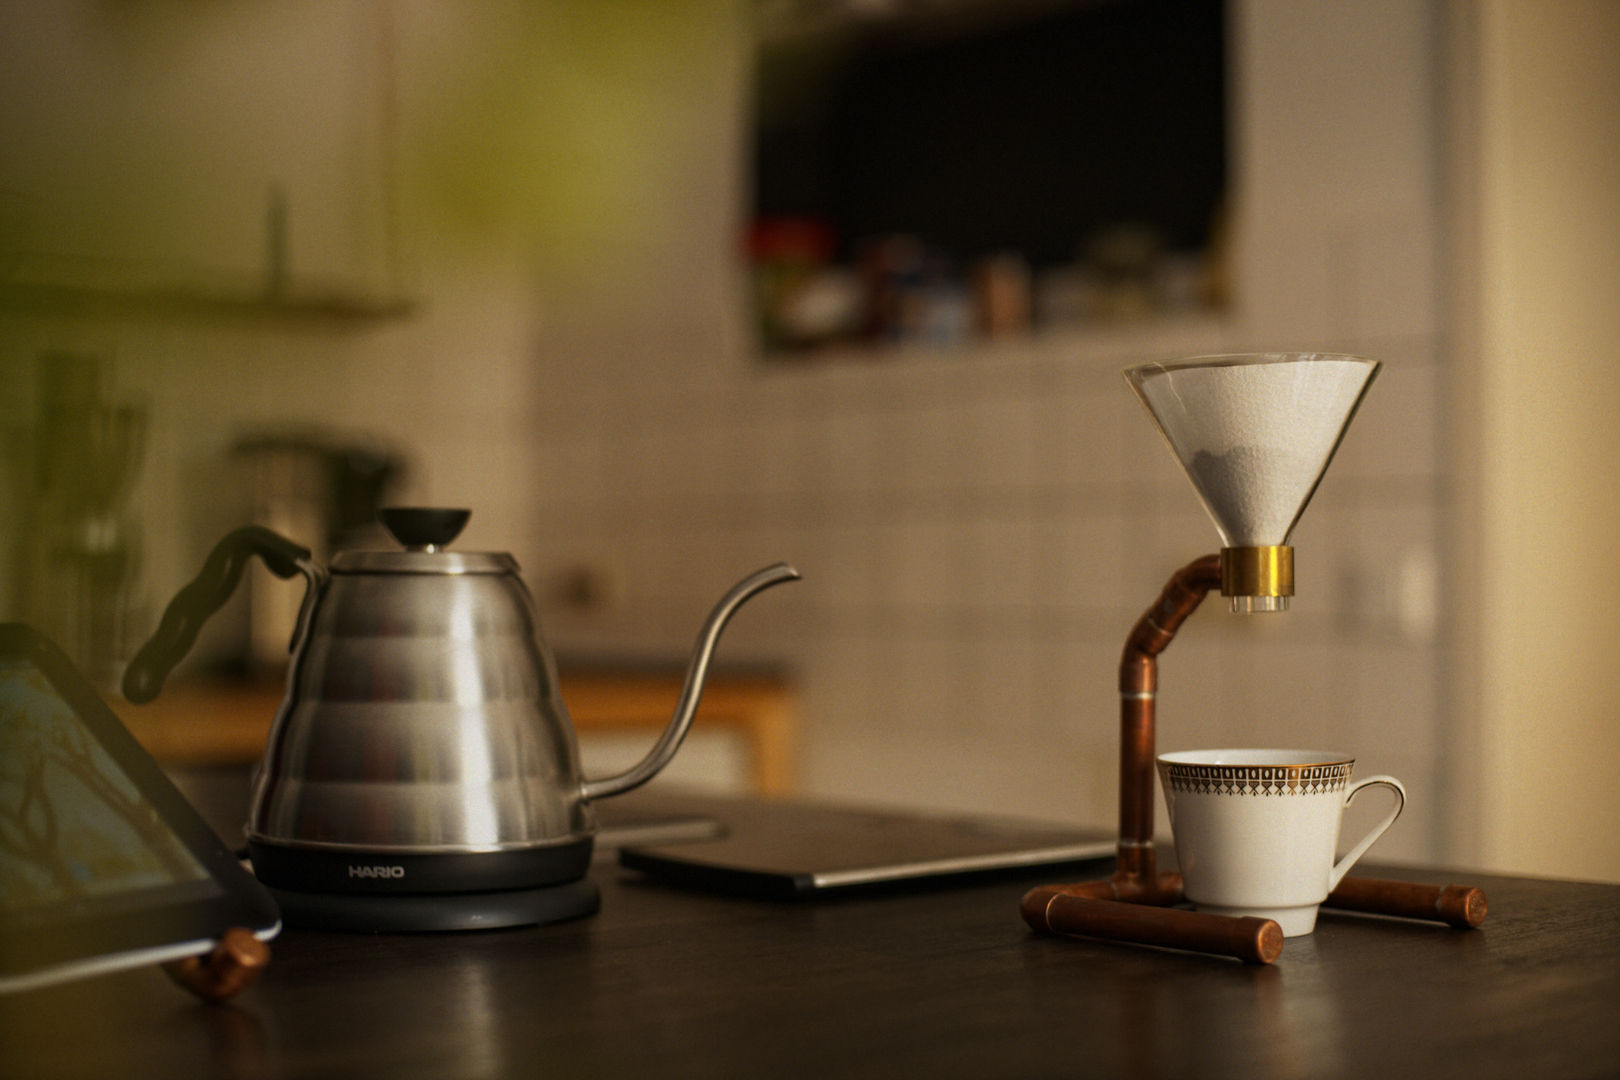 COPPER COFFEE - Dripper - Pour Over Coffee Stand, Drip Coffee Stand, COPPER COFFEE COPPER COFFEE ห้องครัว ทองแดง ทองสัมฤทธิ์ ทองเหลือง เครื่องใช้ในครัว